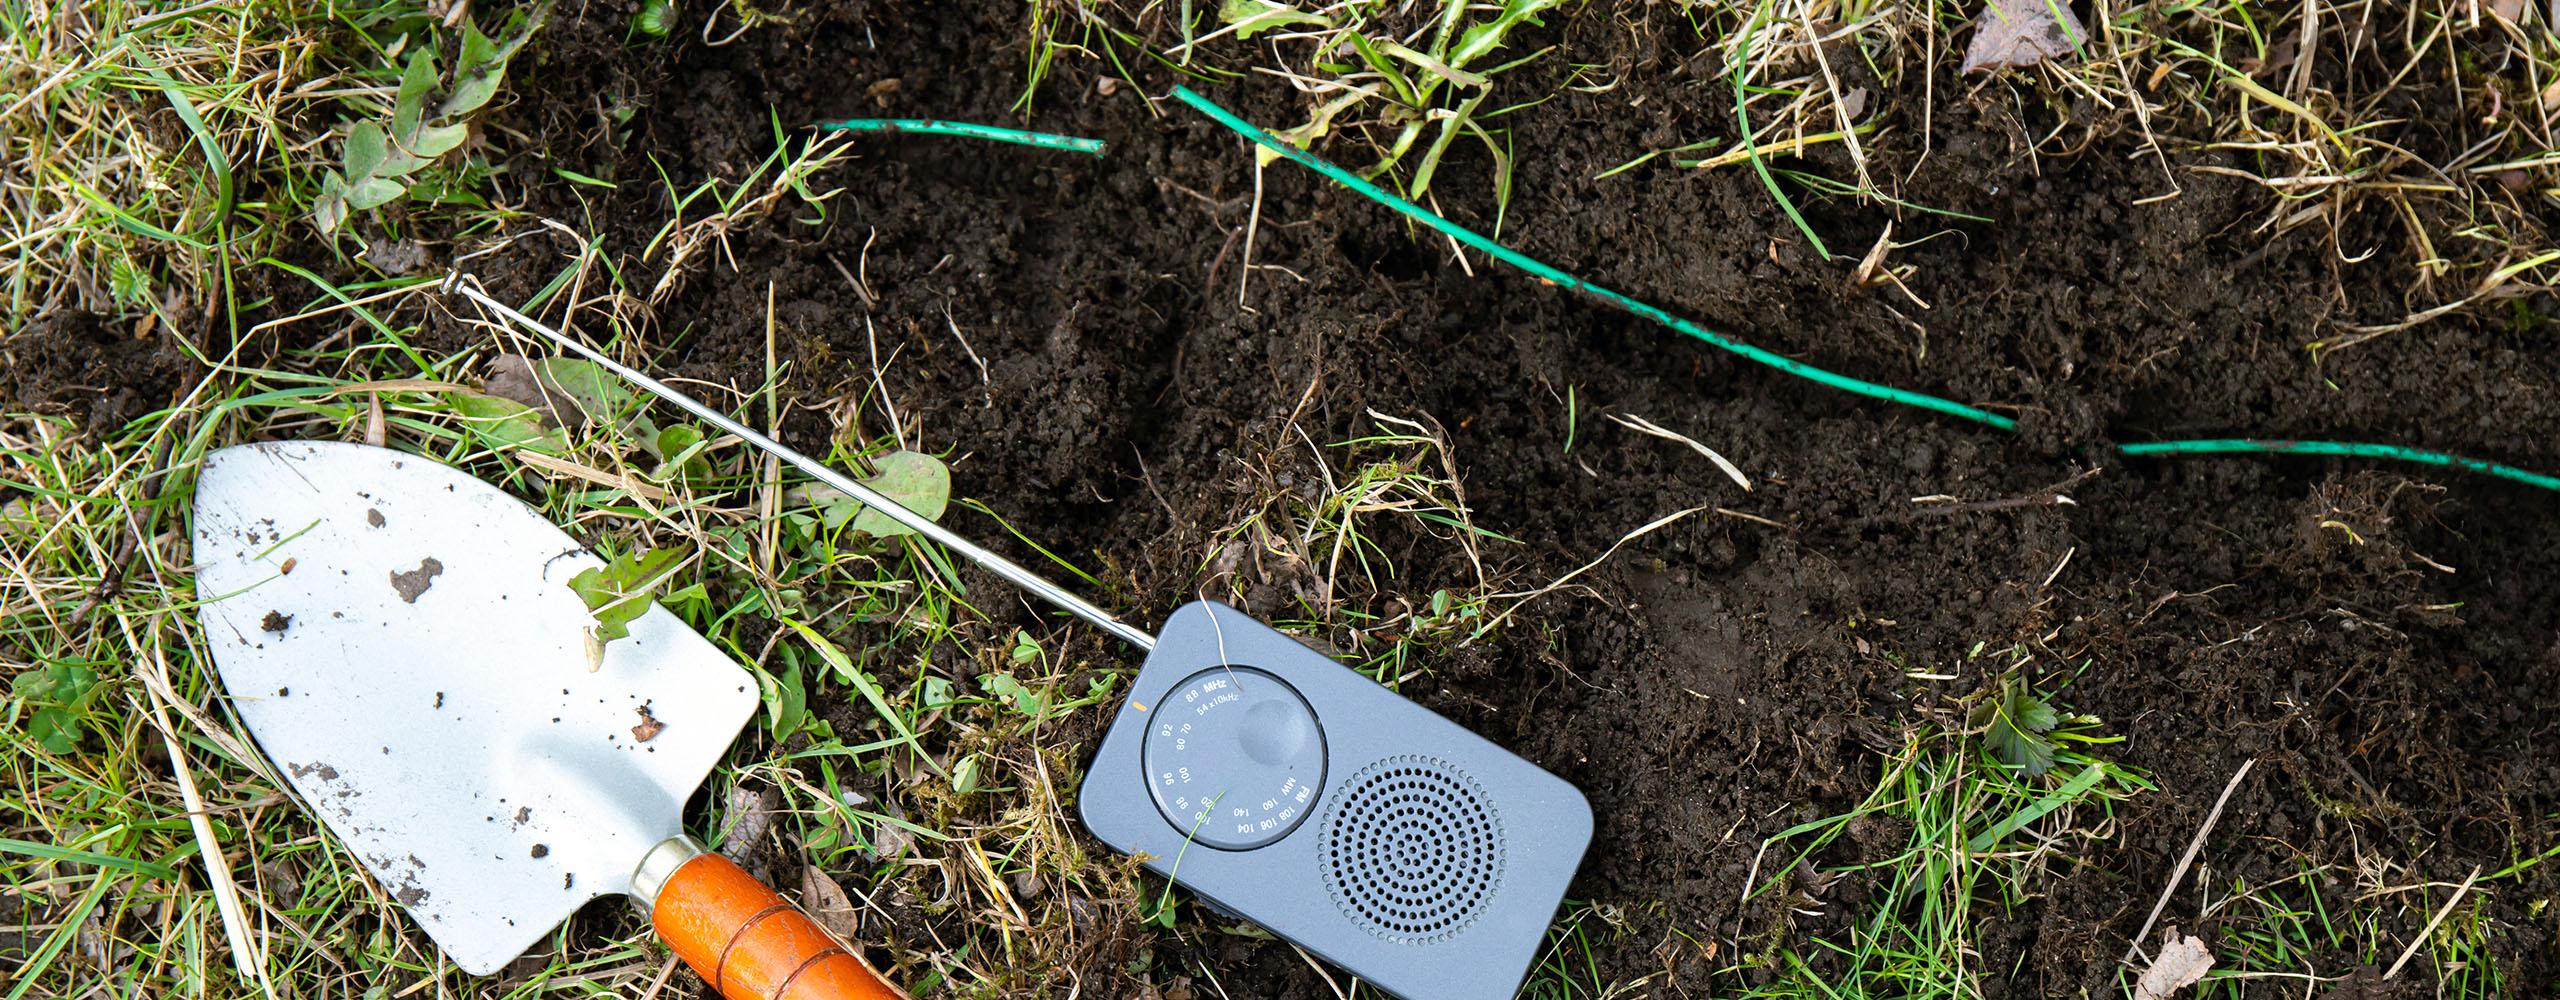 Eine Gartenschaufel und ein mobiles AM-Radio liegen neben einem ausgegrabenen Mähroboter-Kabel mit Kabelbruch.